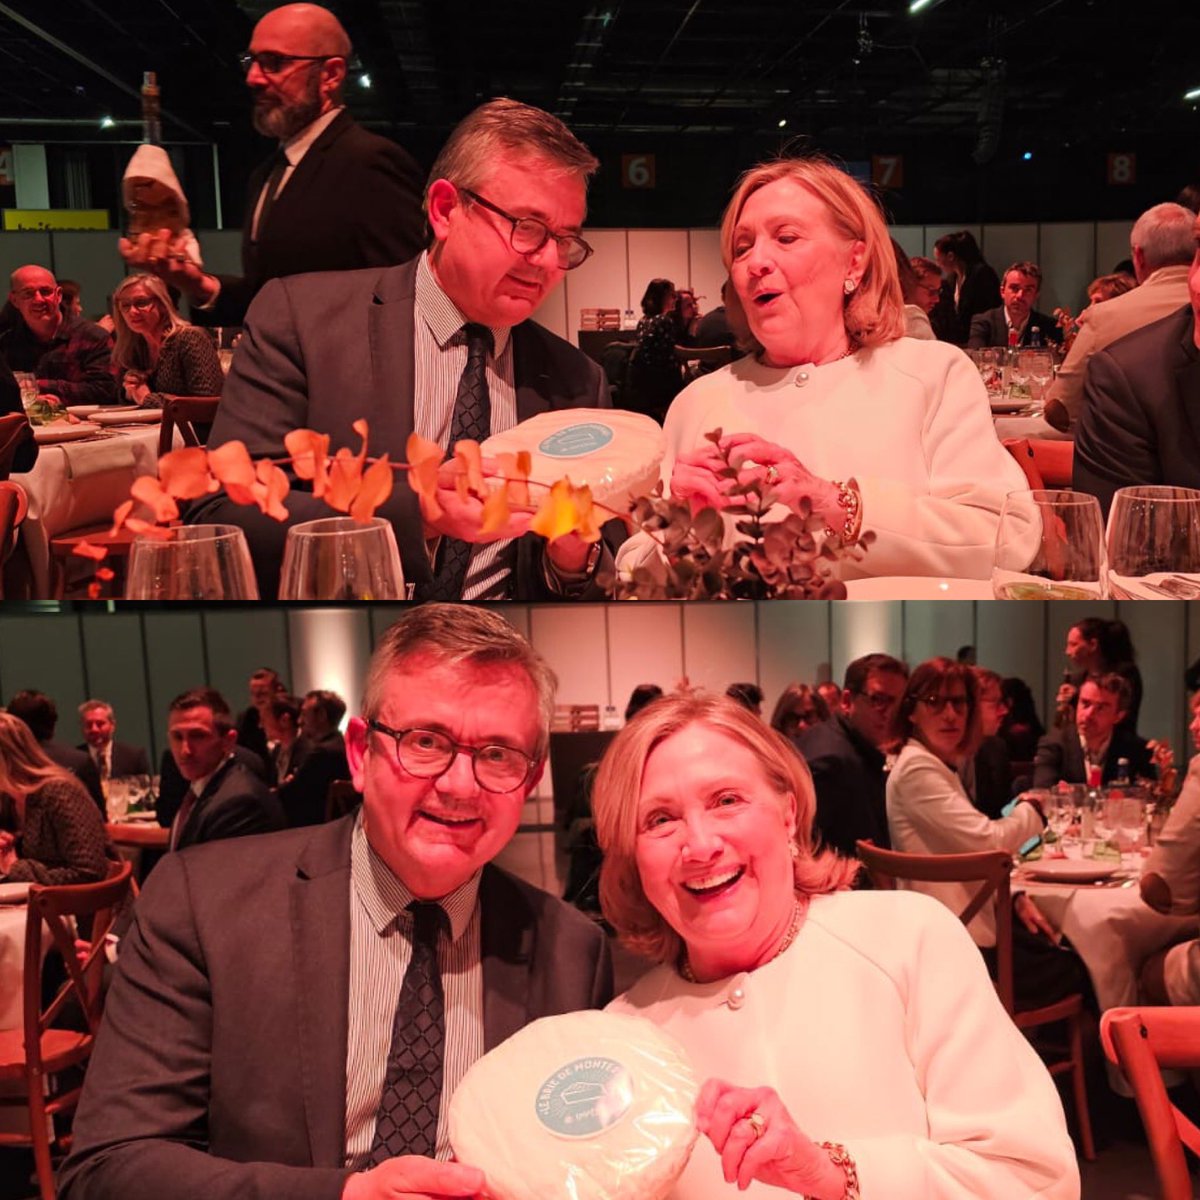 À l’occasion du 6ème World Impact Summit nous avons accueilli une invitée exceptionnelle en la personne de Hillary Clinton Ce fut l’occasion pour moi d’un clin d’œil en lui offrant un produit typiquement #madeinfrance à savoir un Brie de Montereau